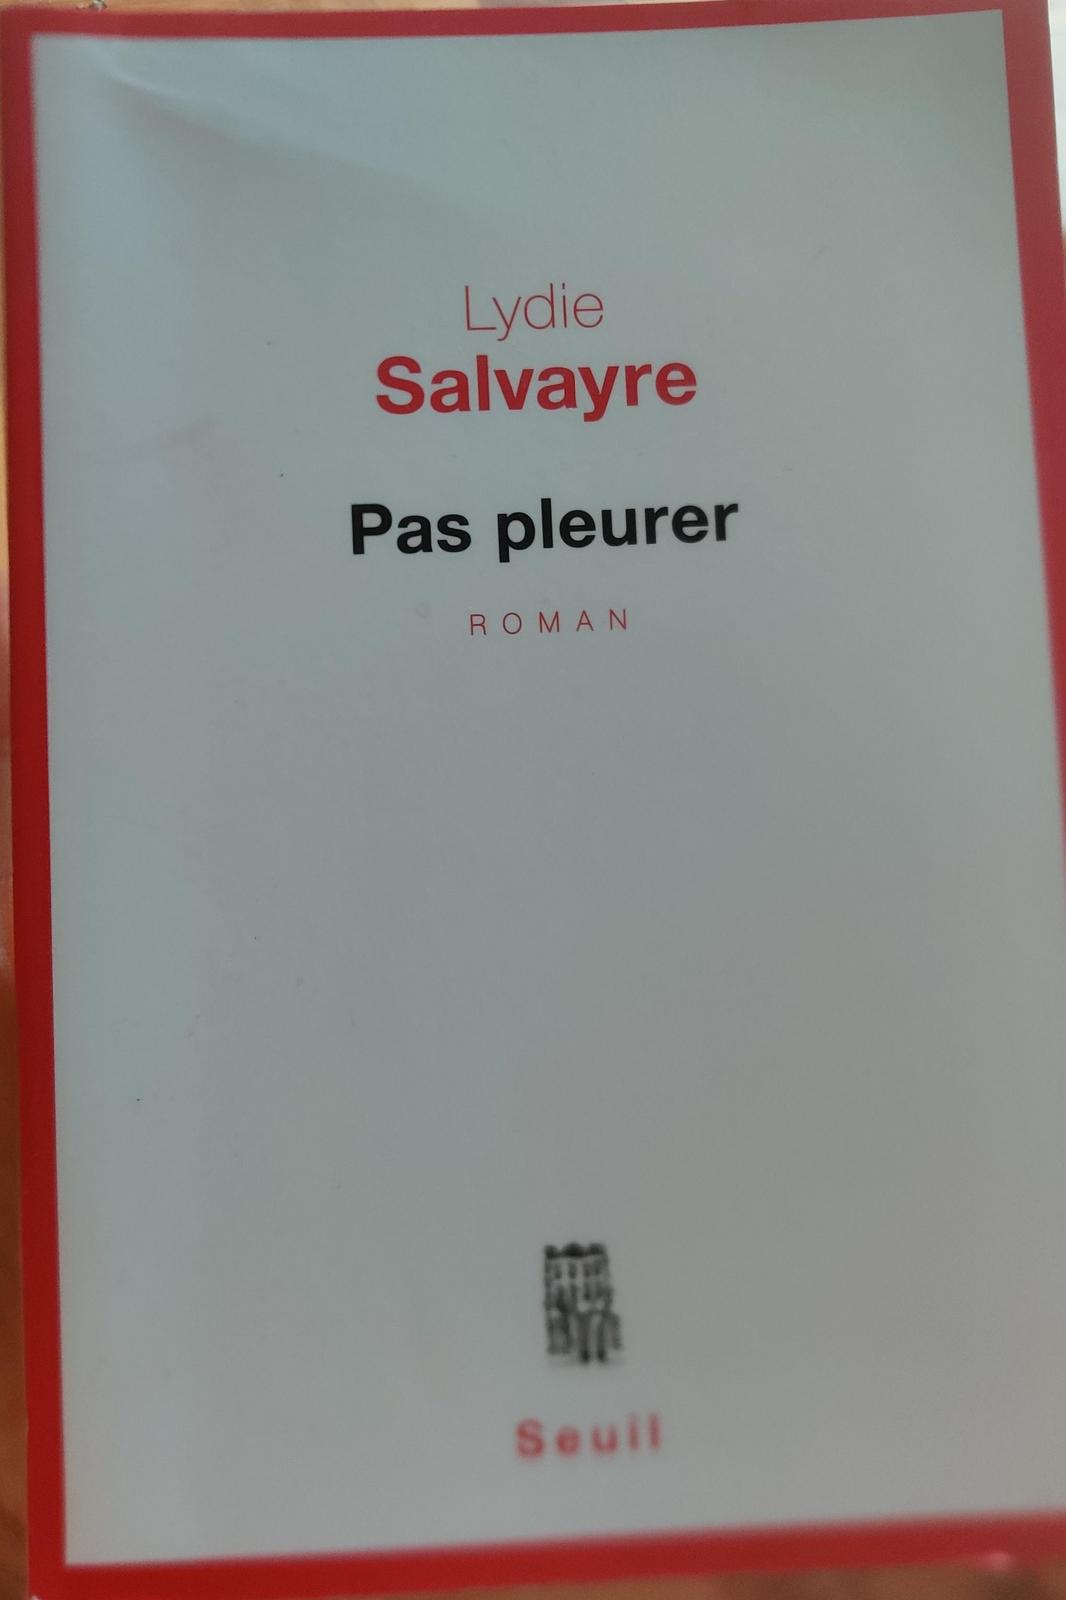 Lydie Salvayre: Pas pleurer (French language)